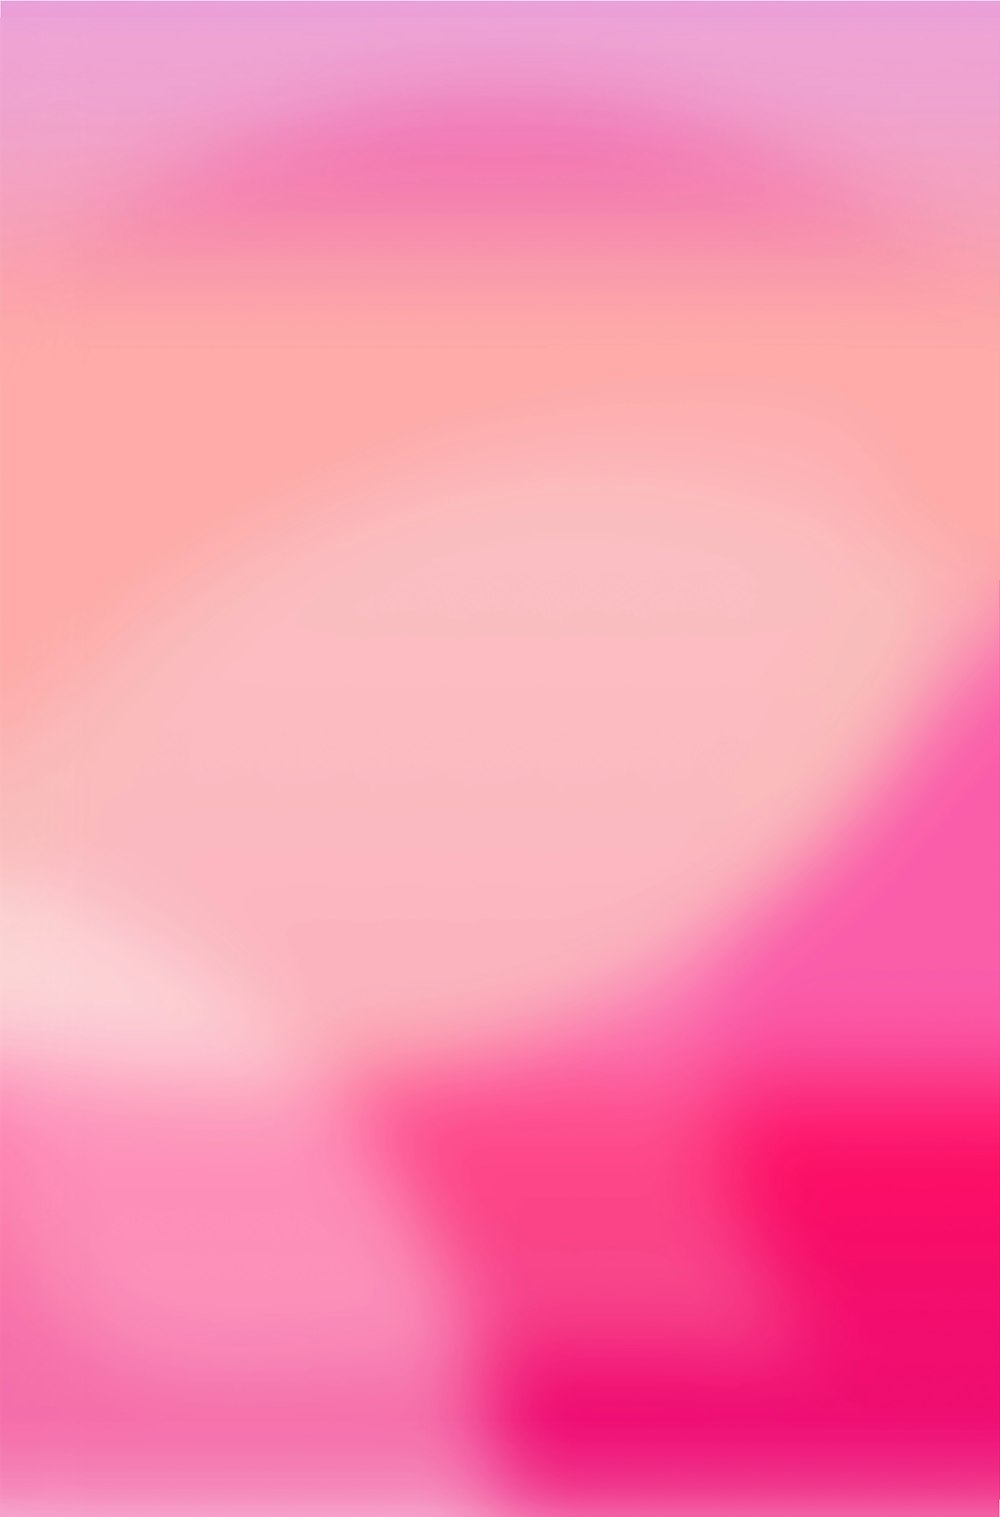 Foto Ilustração de luz rosa e branca – Imagem de Rosa grátis no